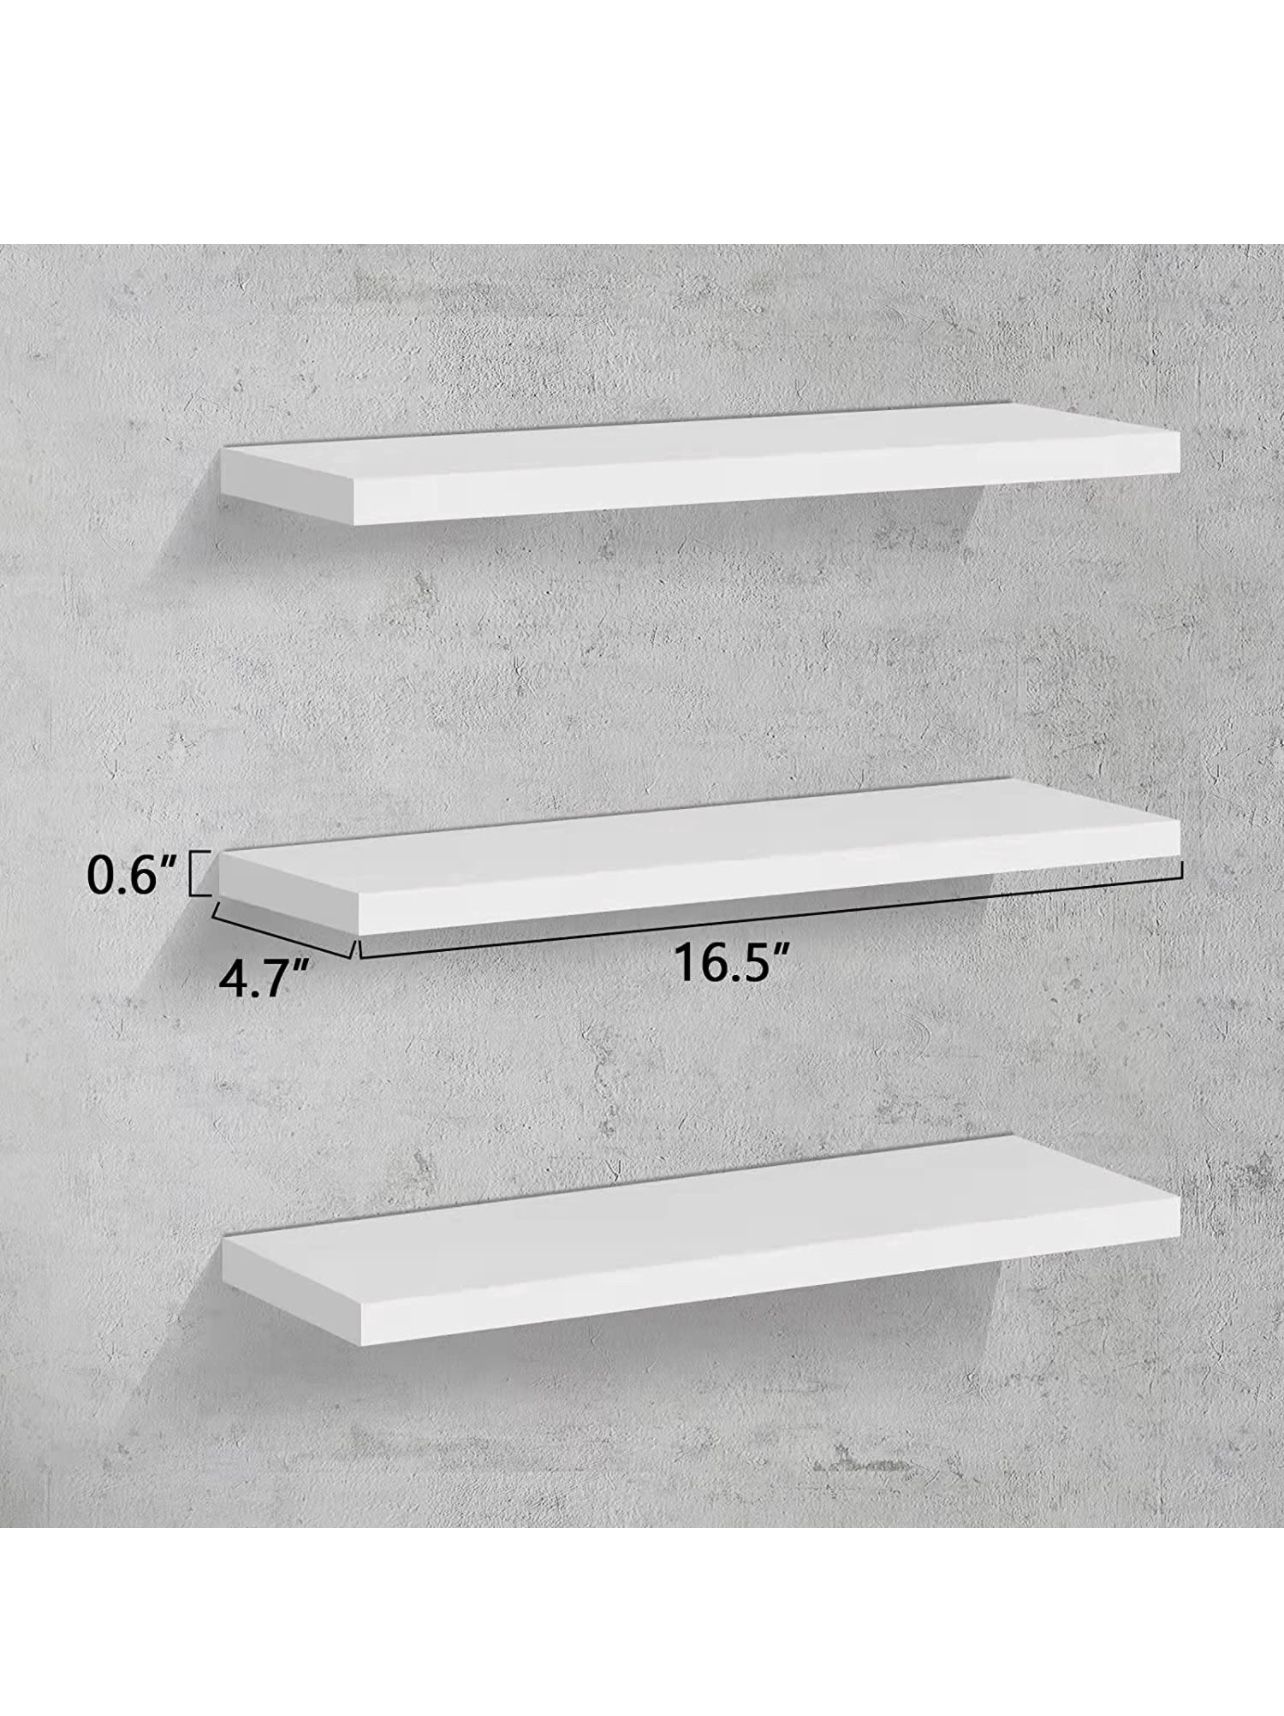 New White floating Wall Shelves